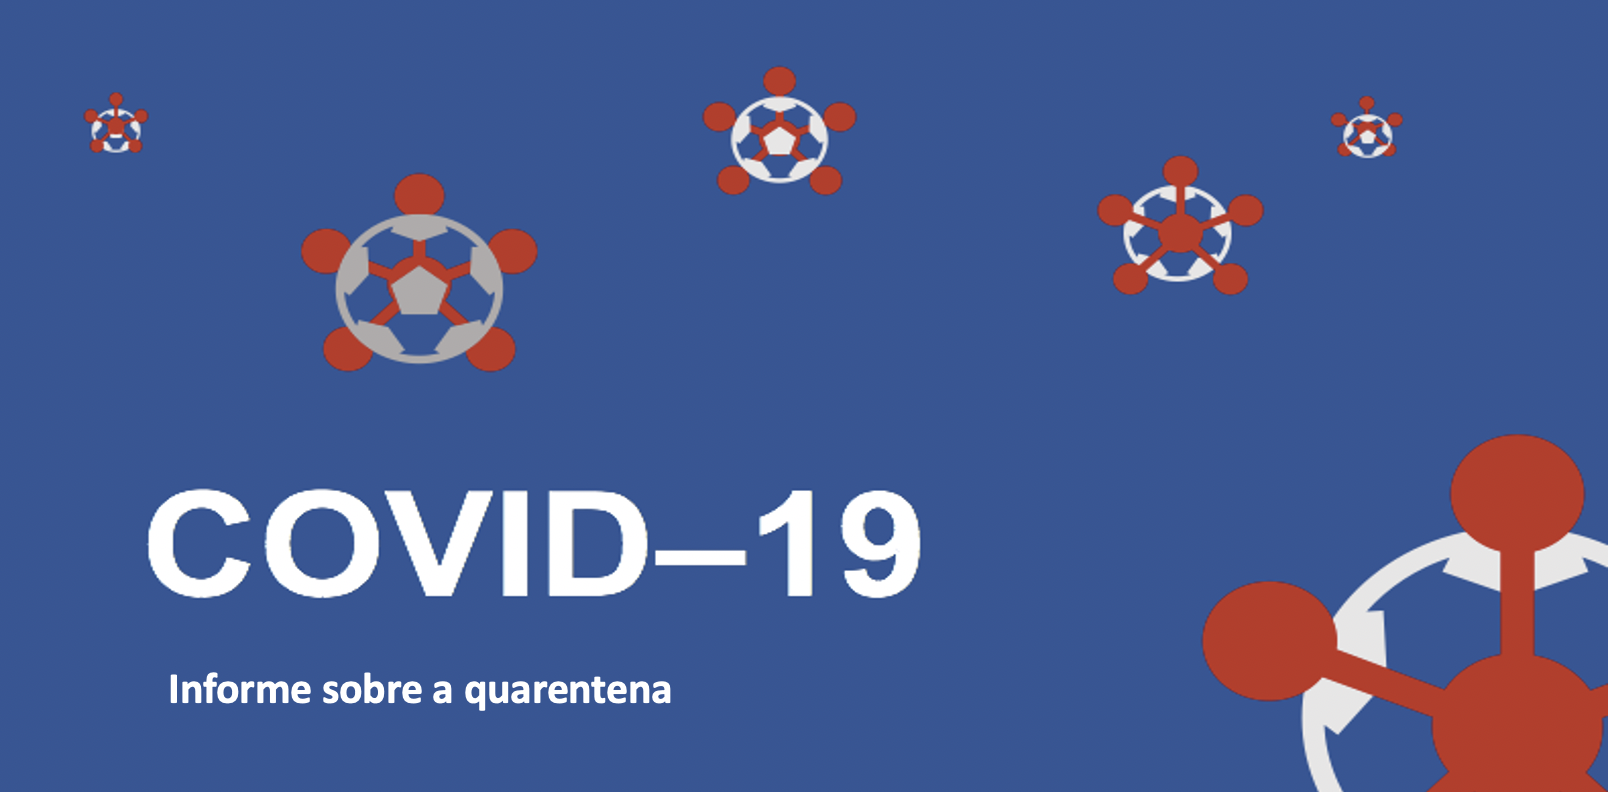 Cartaz azul escuro com ilustracões estilizadas em vermelho do coronavírus.  Em letras brancas encontra-se escrito: COVID-19, informes sobre a quarentena.